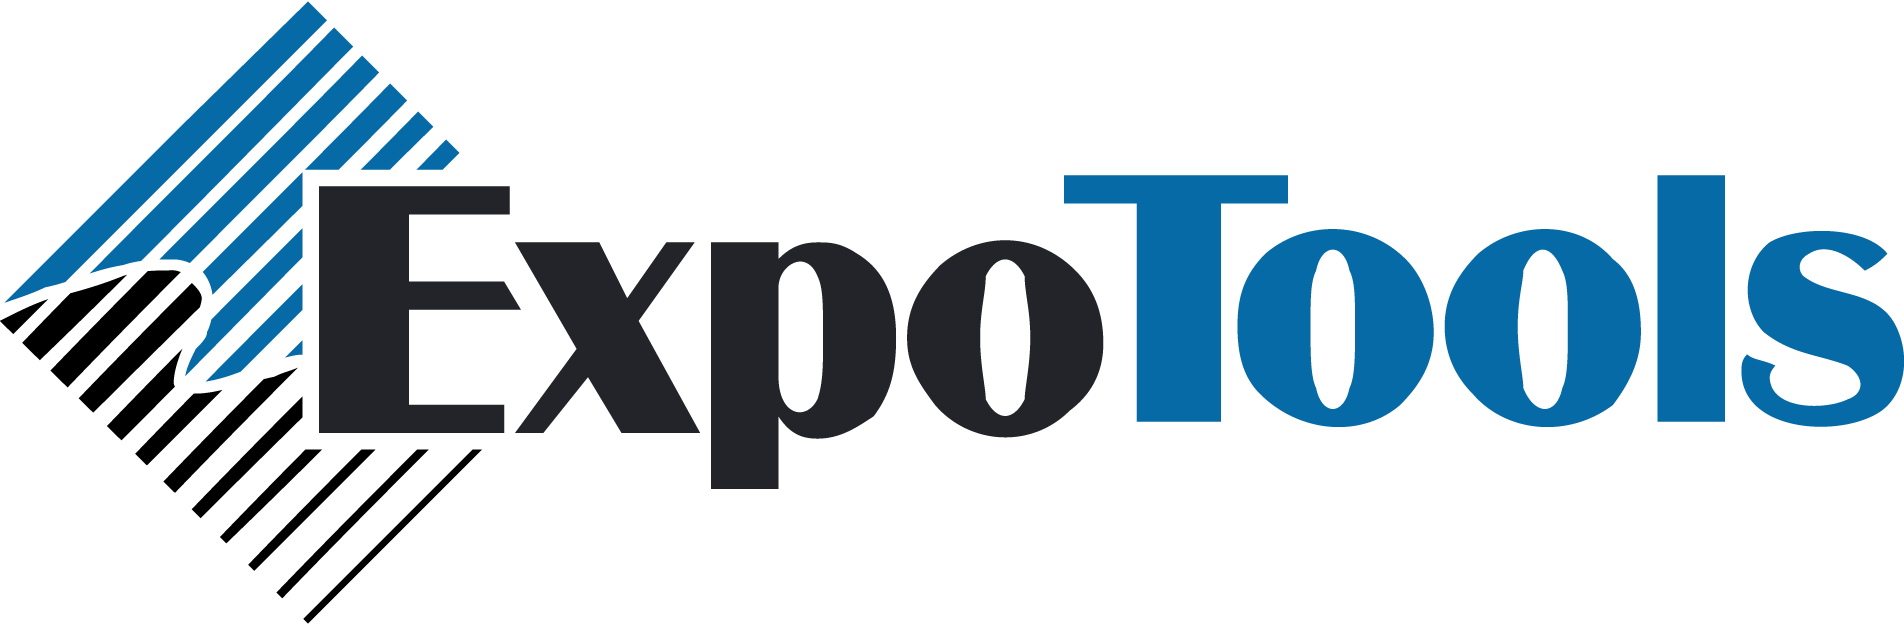 ExpoTools USA logo